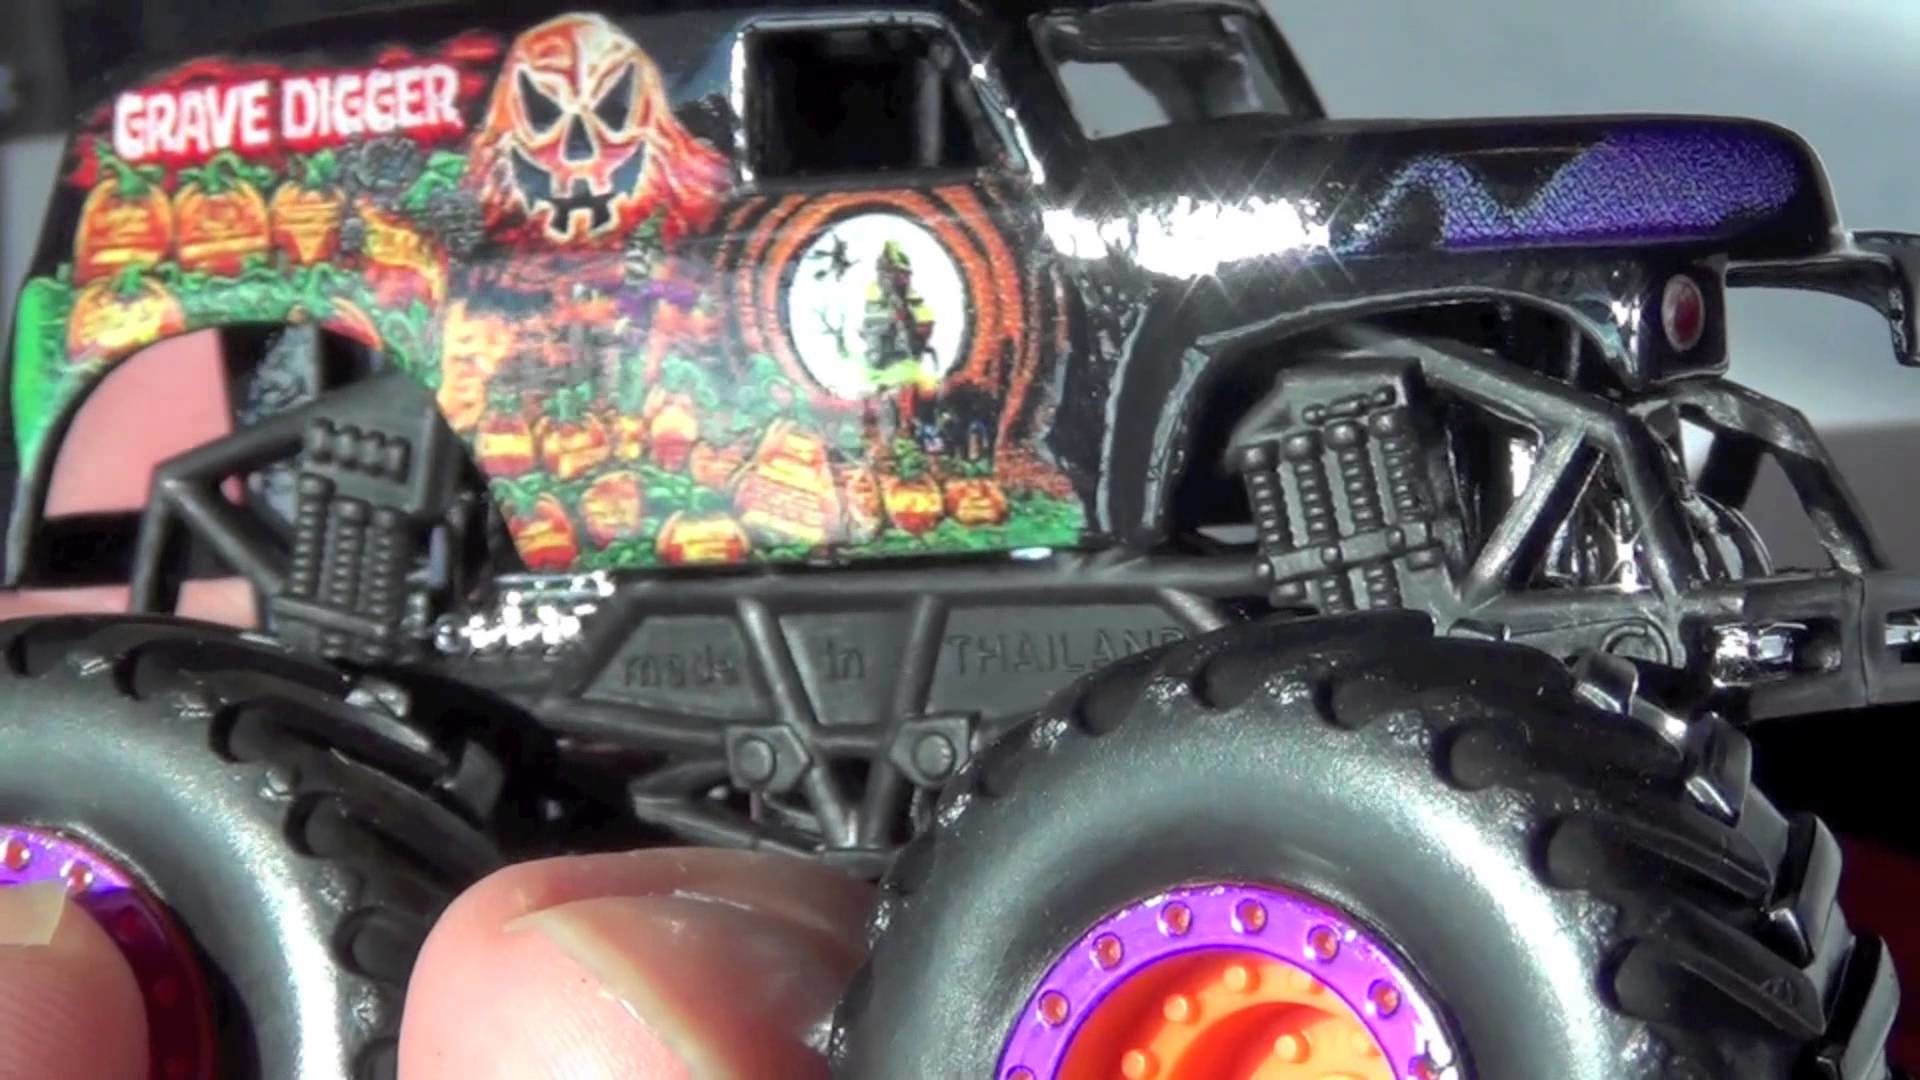 1920x1080 â Monster Jam Truck Grave Digger Halloween 2014 limited edition offer  Review - YouTube